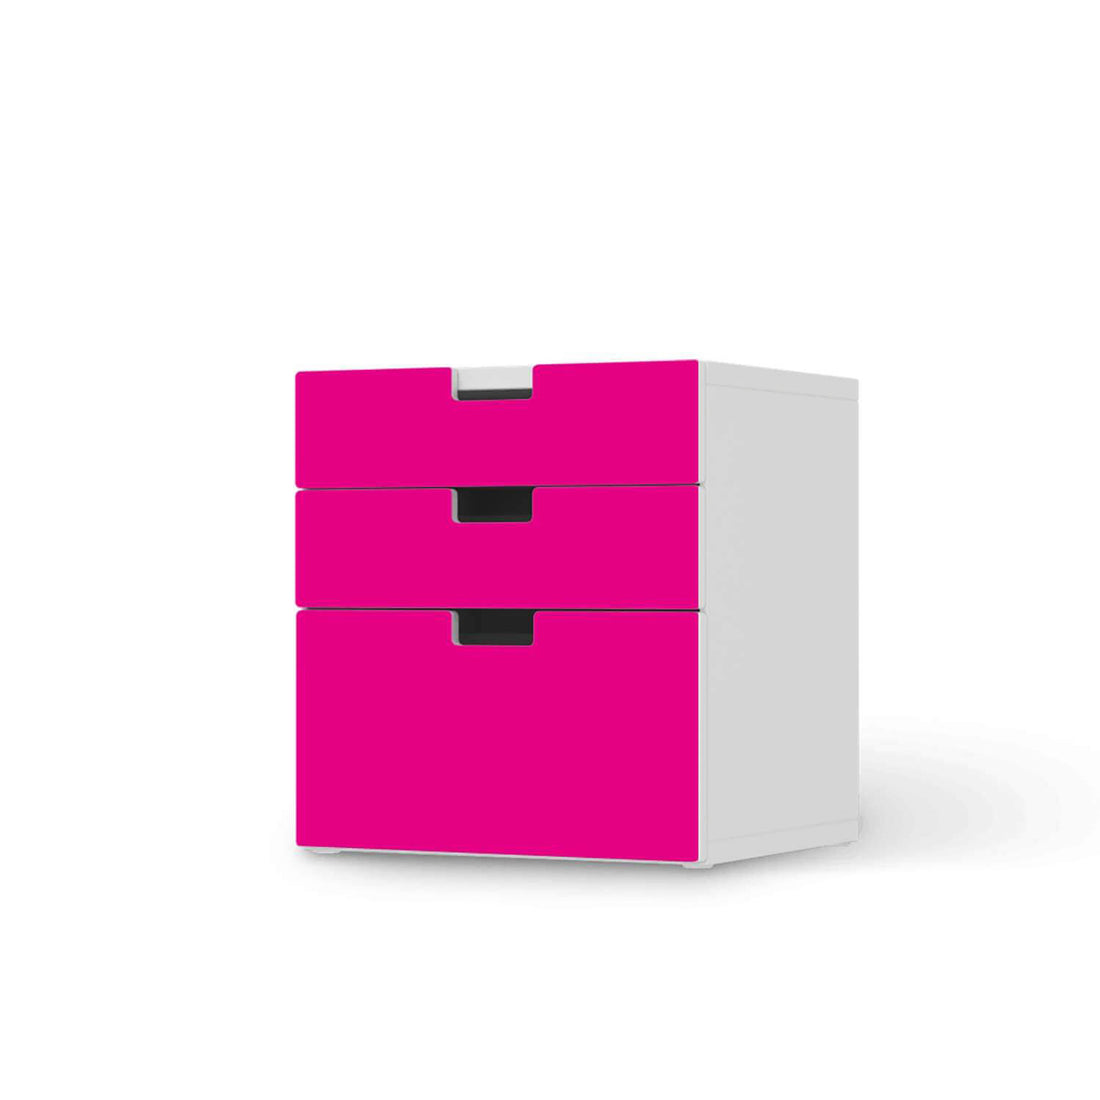 Folie für Möbel Pink Dark - IKEA Stuva Kommode - 3 Schubladen (Kombination 1)  - weiss